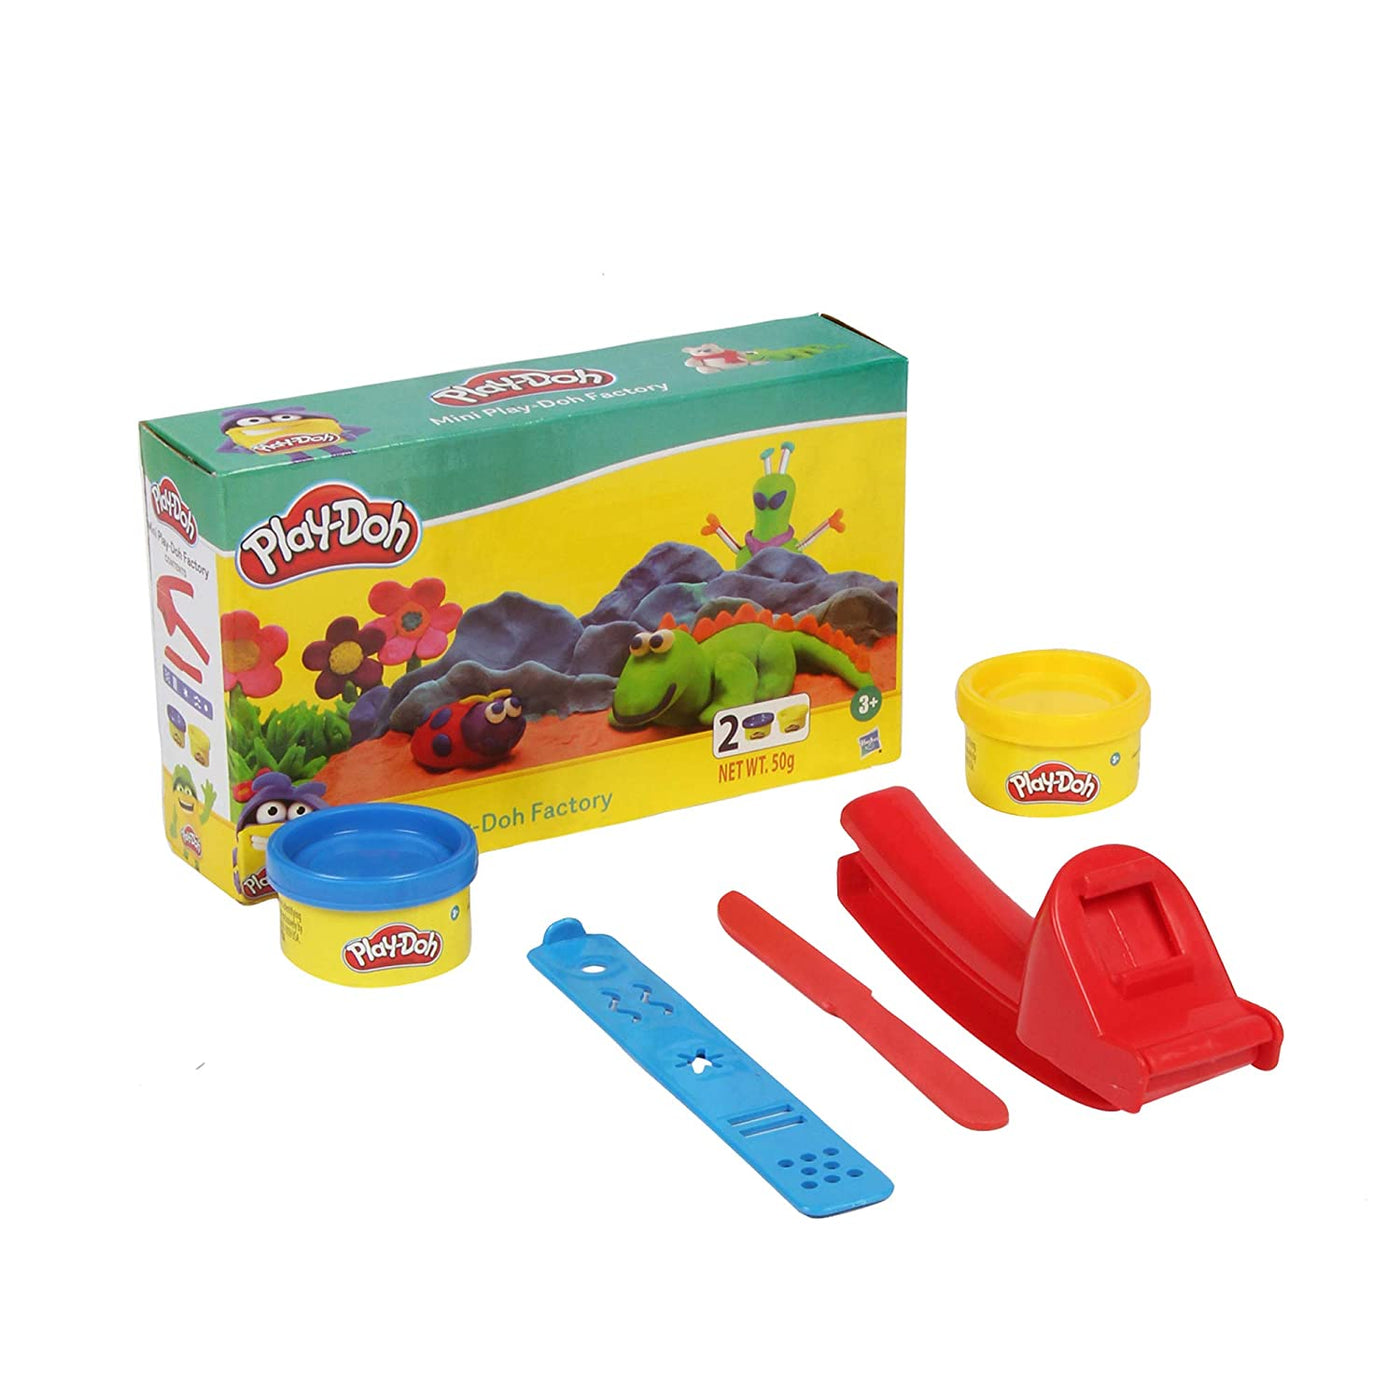 Mini Play Doh Factory - Play Doh | Hasbro